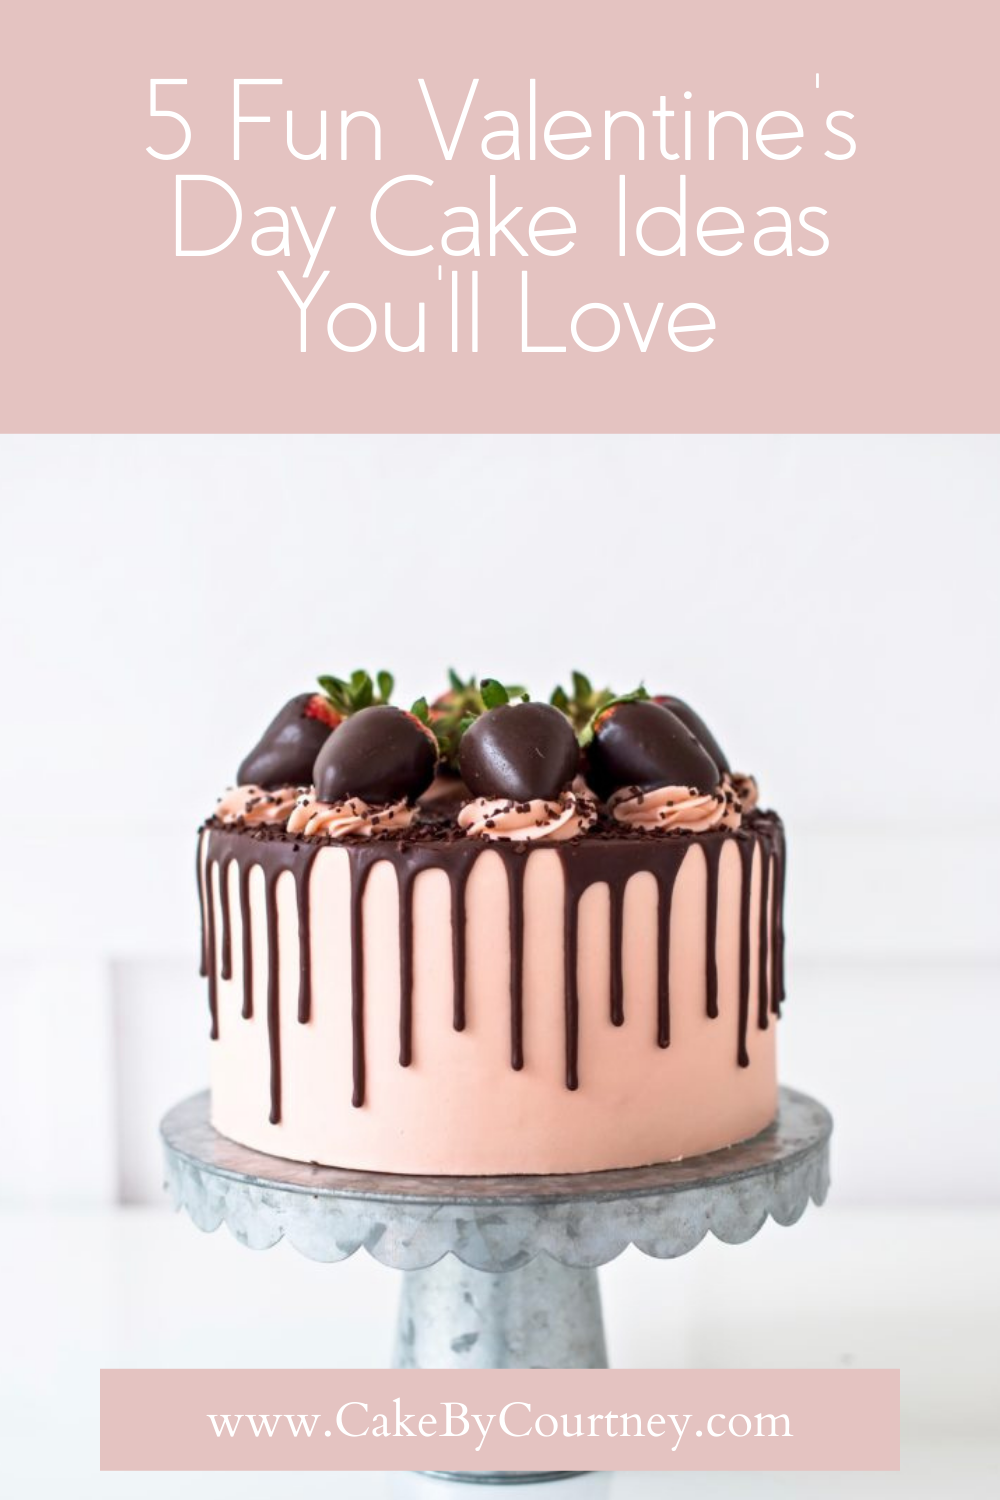 5 fun valentine's day cake ideas you'll love. www.cakebycourtney.com